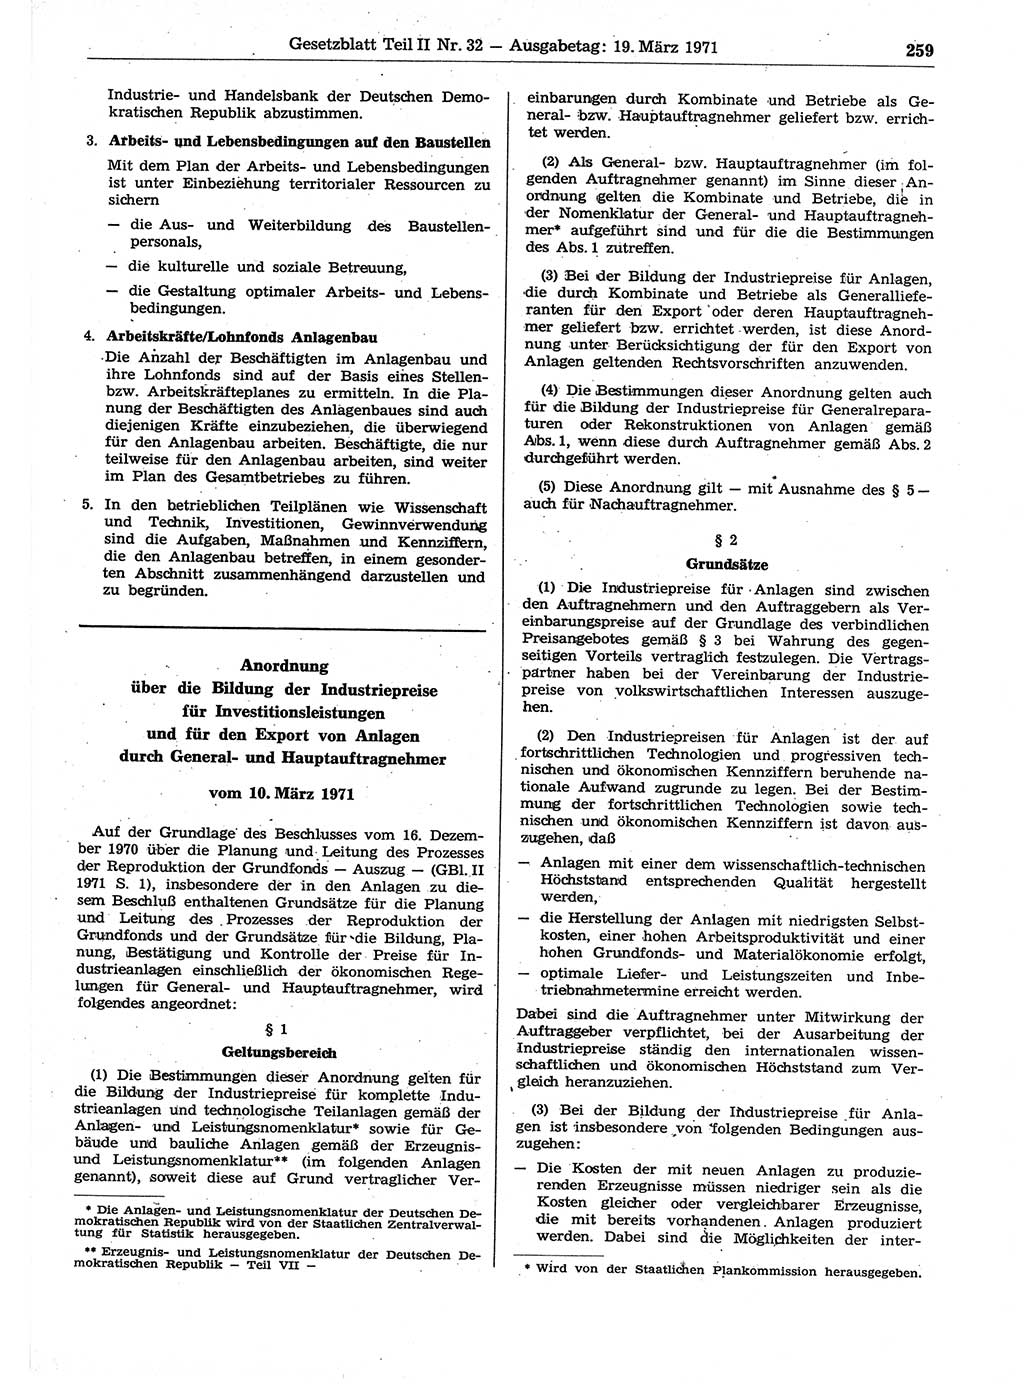 Gesetzblatt (GBl.) der Deutschen Demokratischen Republik (DDR) Teil ⅠⅠ 1971, Seite 259 (GBl. DDR ⅠⅠ 1971, S. 259)